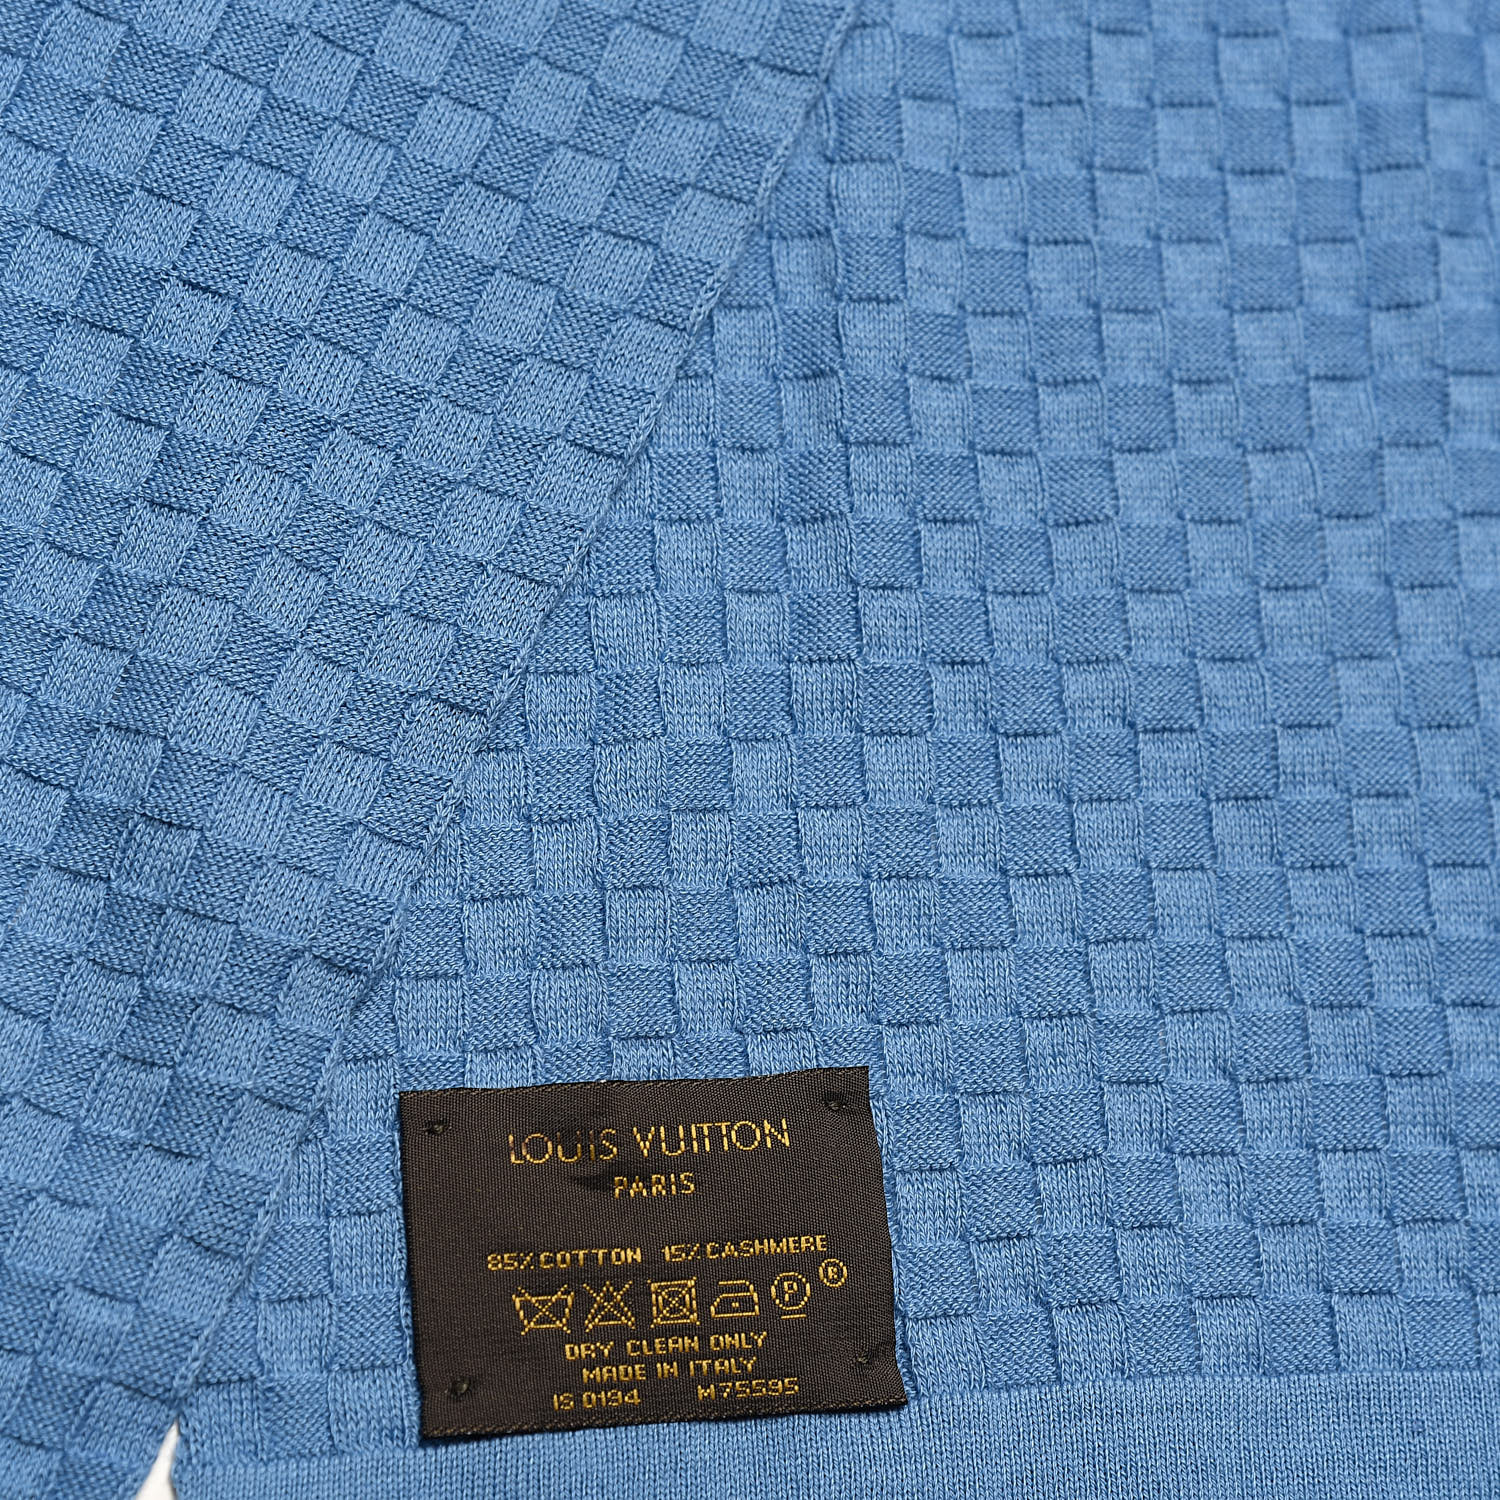 Authentic LOUIS VUITTON Cashmere scarf Jhelam Stole Blue NEW 650